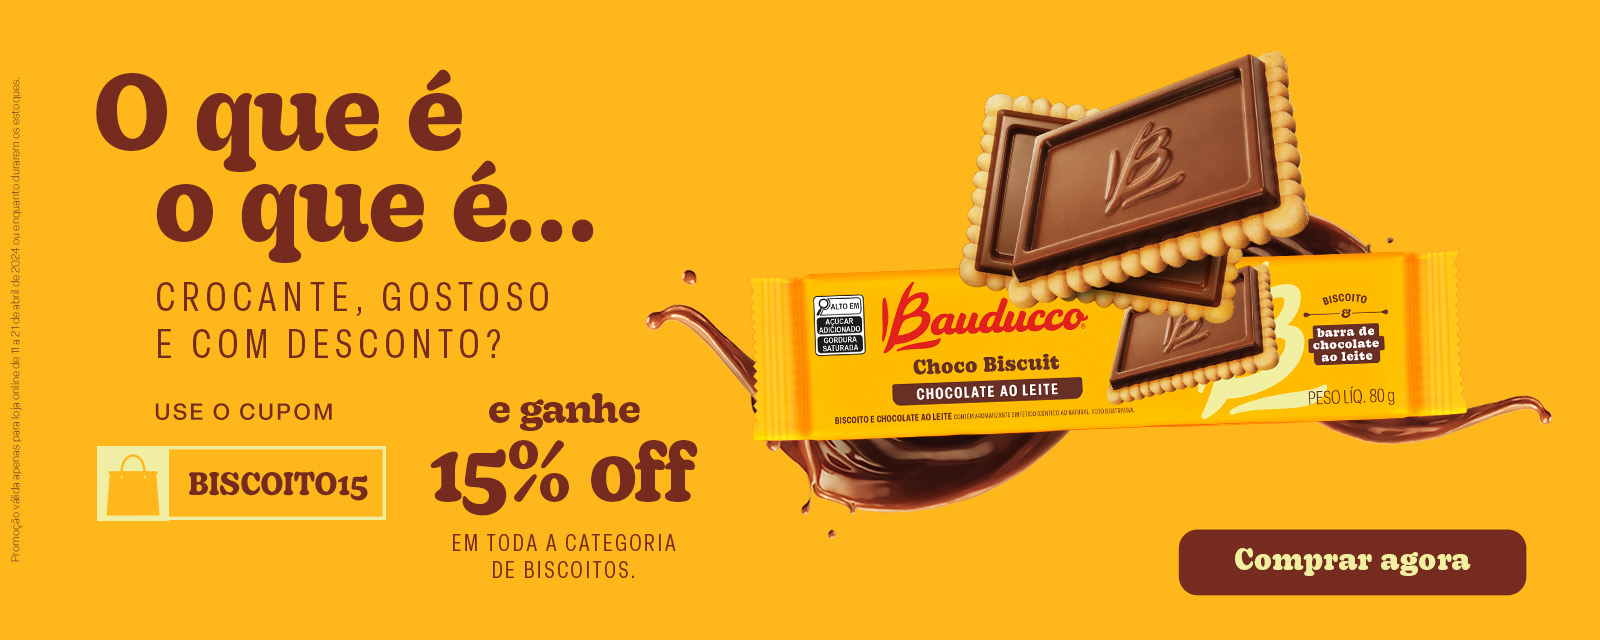 Bauducco | Biscoitos